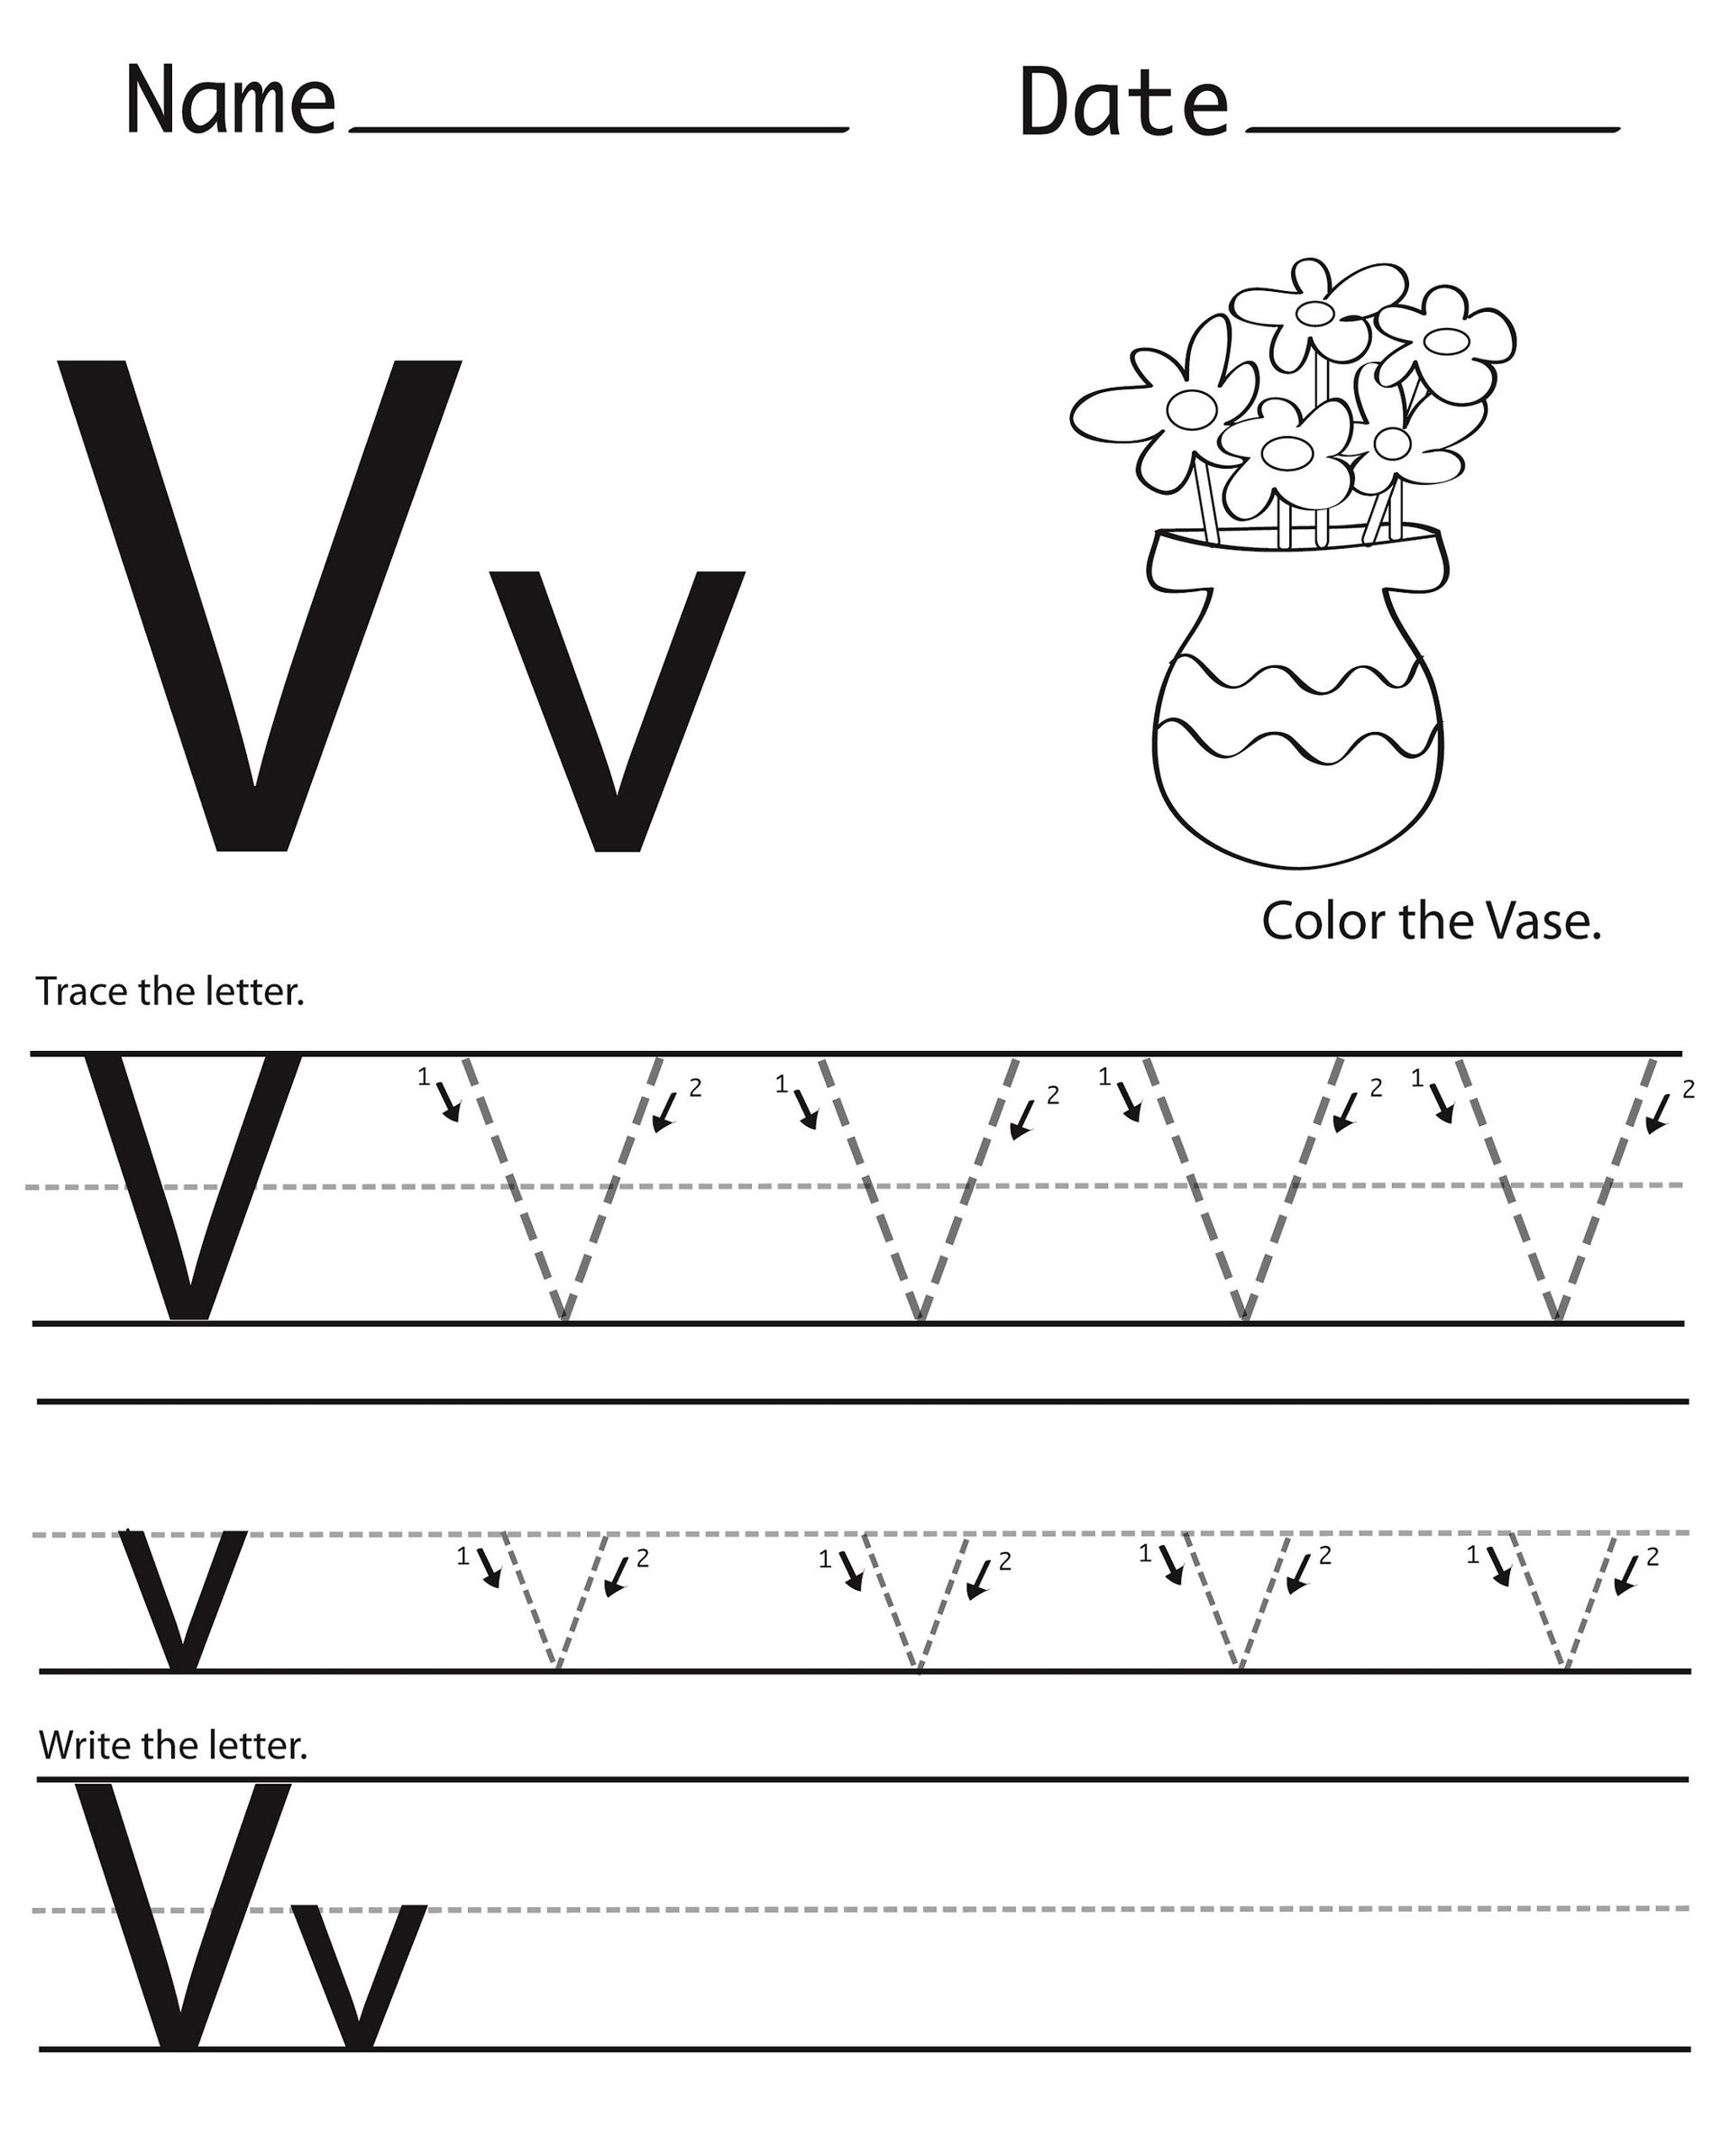 Letter V Worksheets – Kids Learning Activity with regard to Letter V Worksheets For Preschoolers